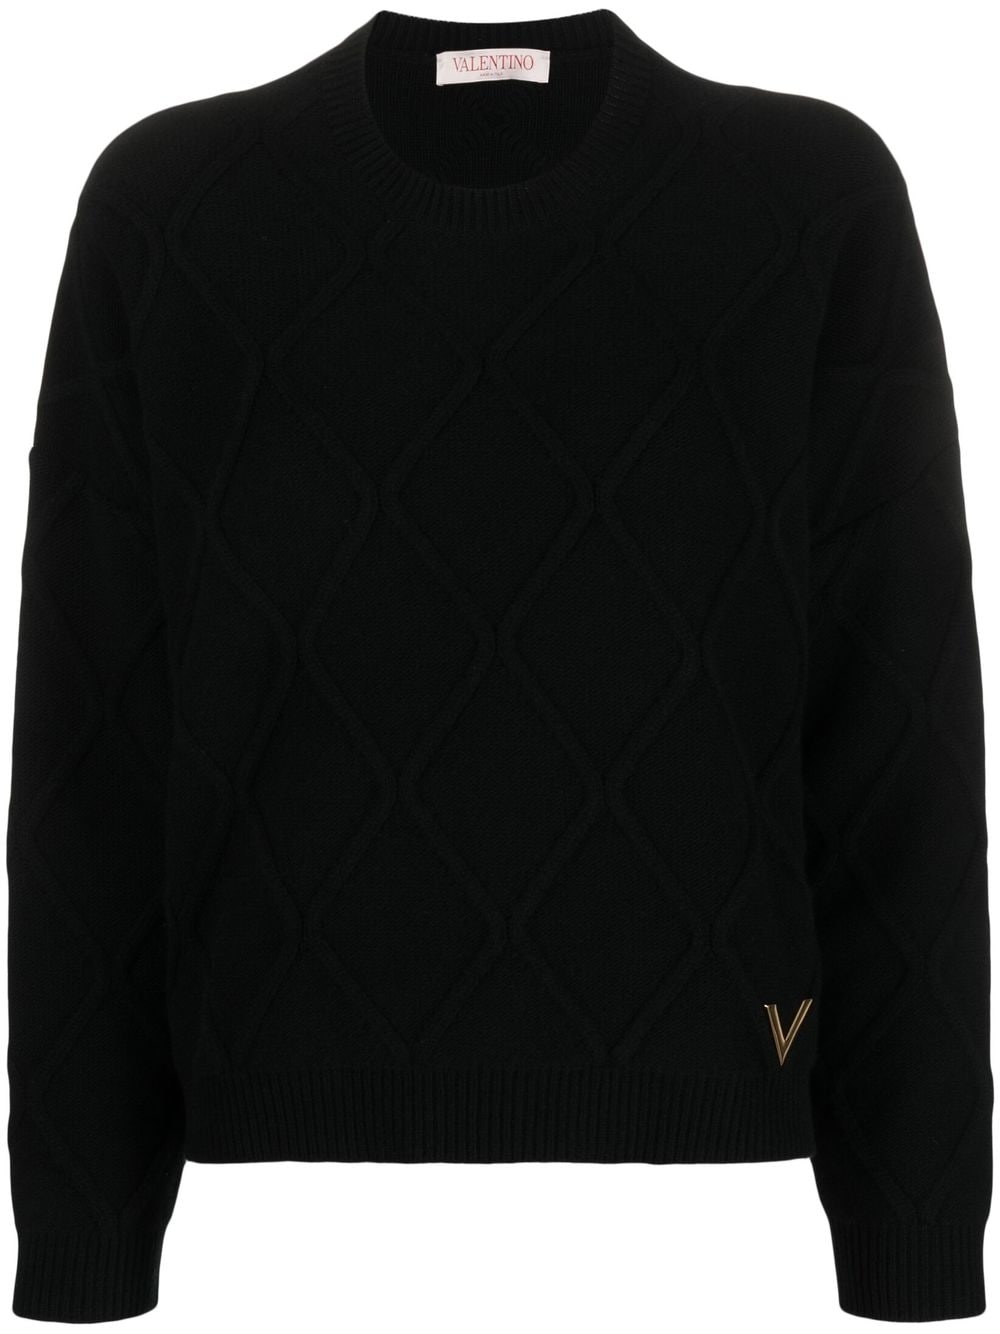 VGold virgin wool jumper